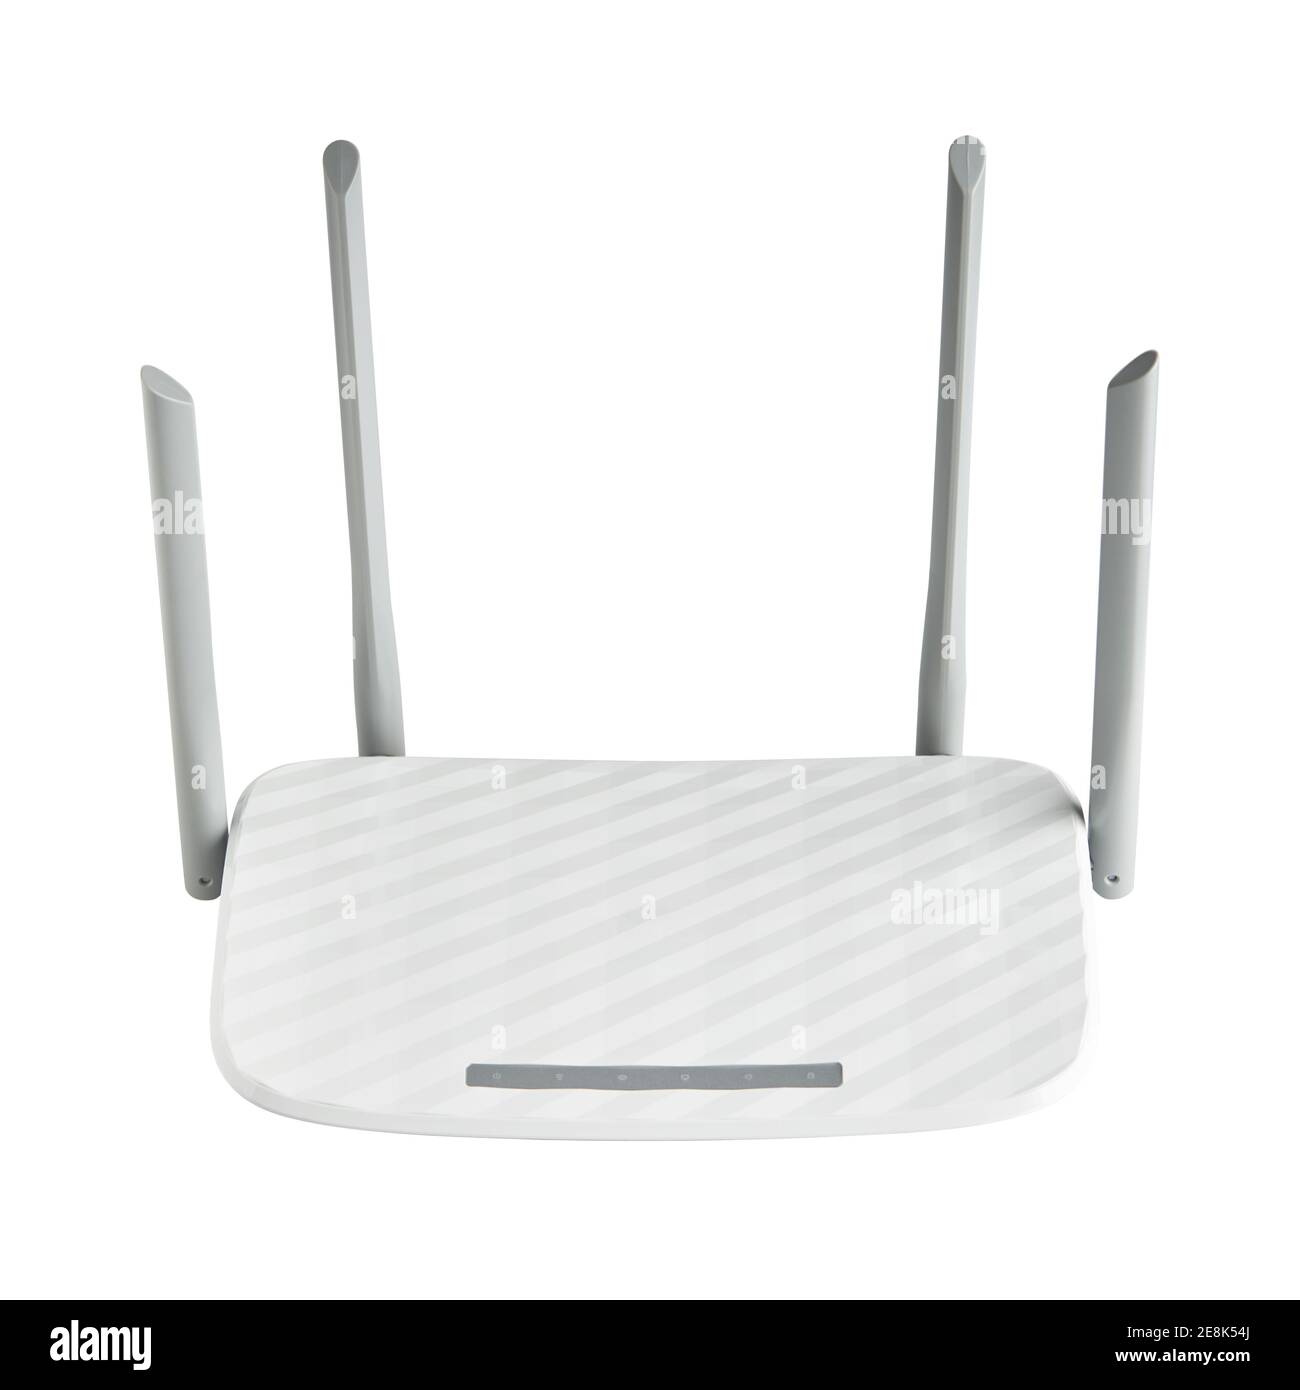 Weißer Wireless-Router mit vier Antennen isoliert auf weißem Hintergrund. Moderne Kommunikation Web-und Internet-Technologien Konzept Stockfoto